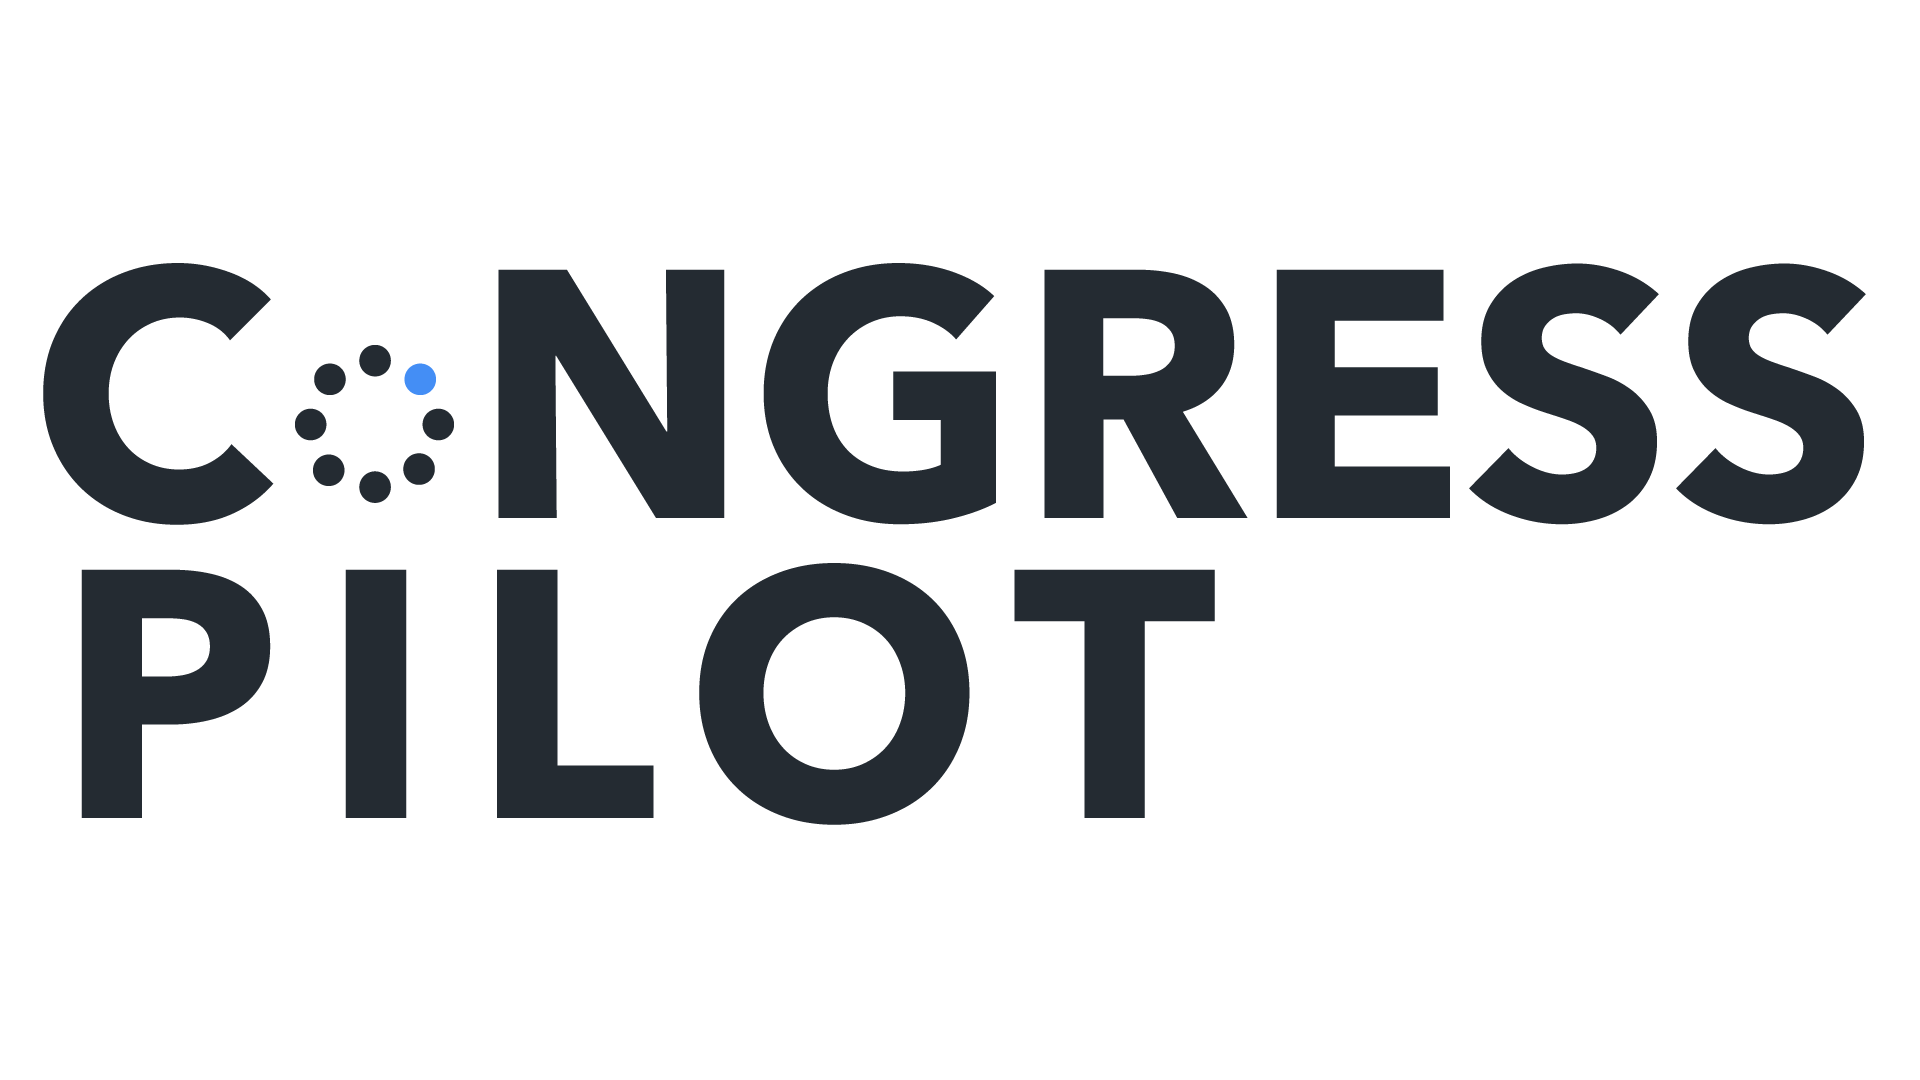 Congress Pilot